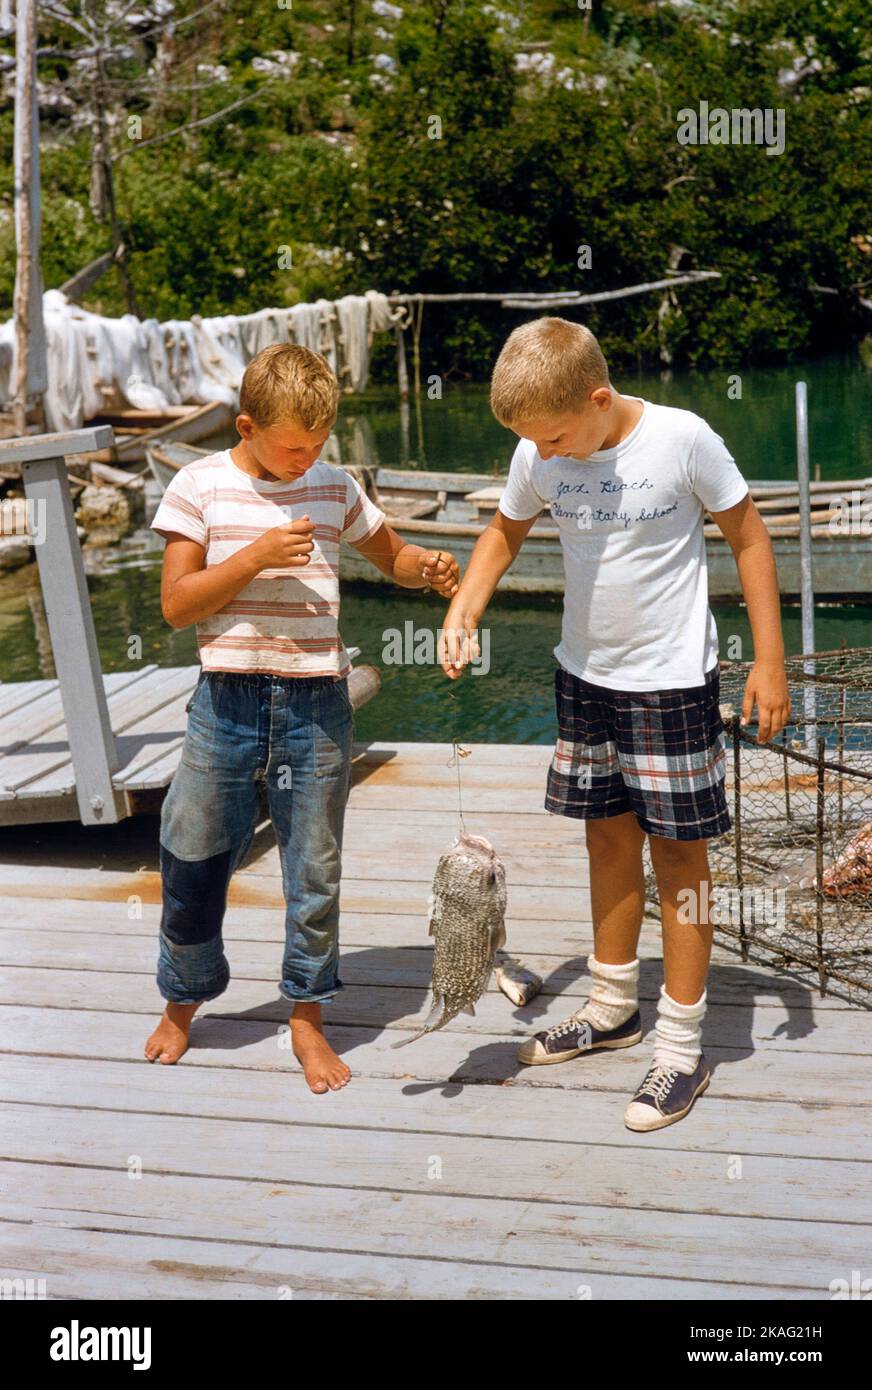 Due ragazzi con pesce pescato, Bermuda, toni Frissell Collection, 1956 Foto Stock